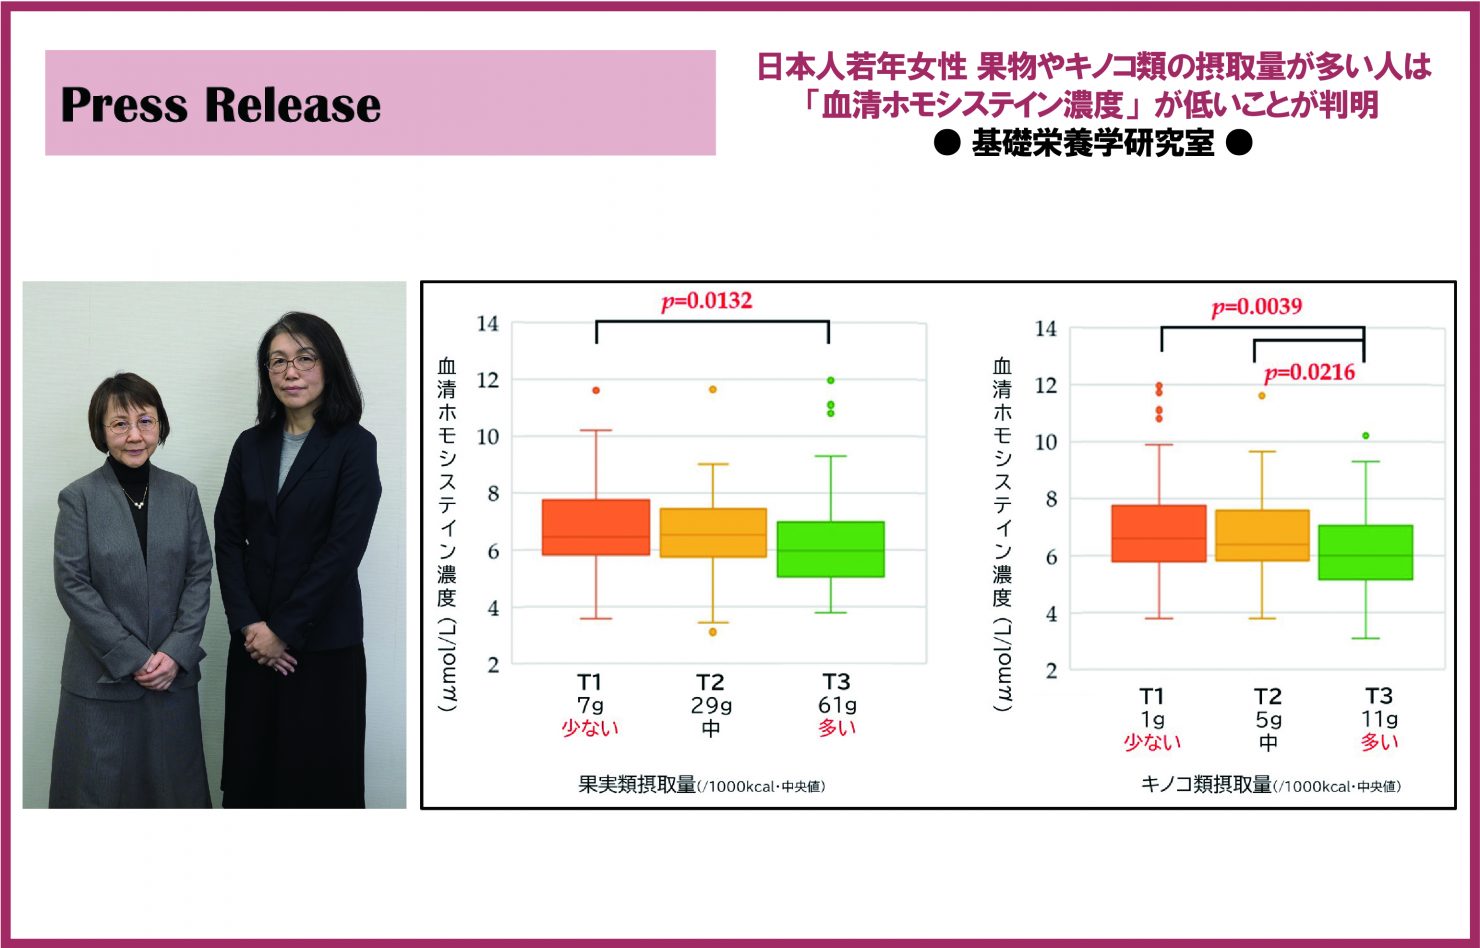 【基礎栄養学研究室】日本人若年女性における「血清ホモシステイン濃度」の研究成果発表